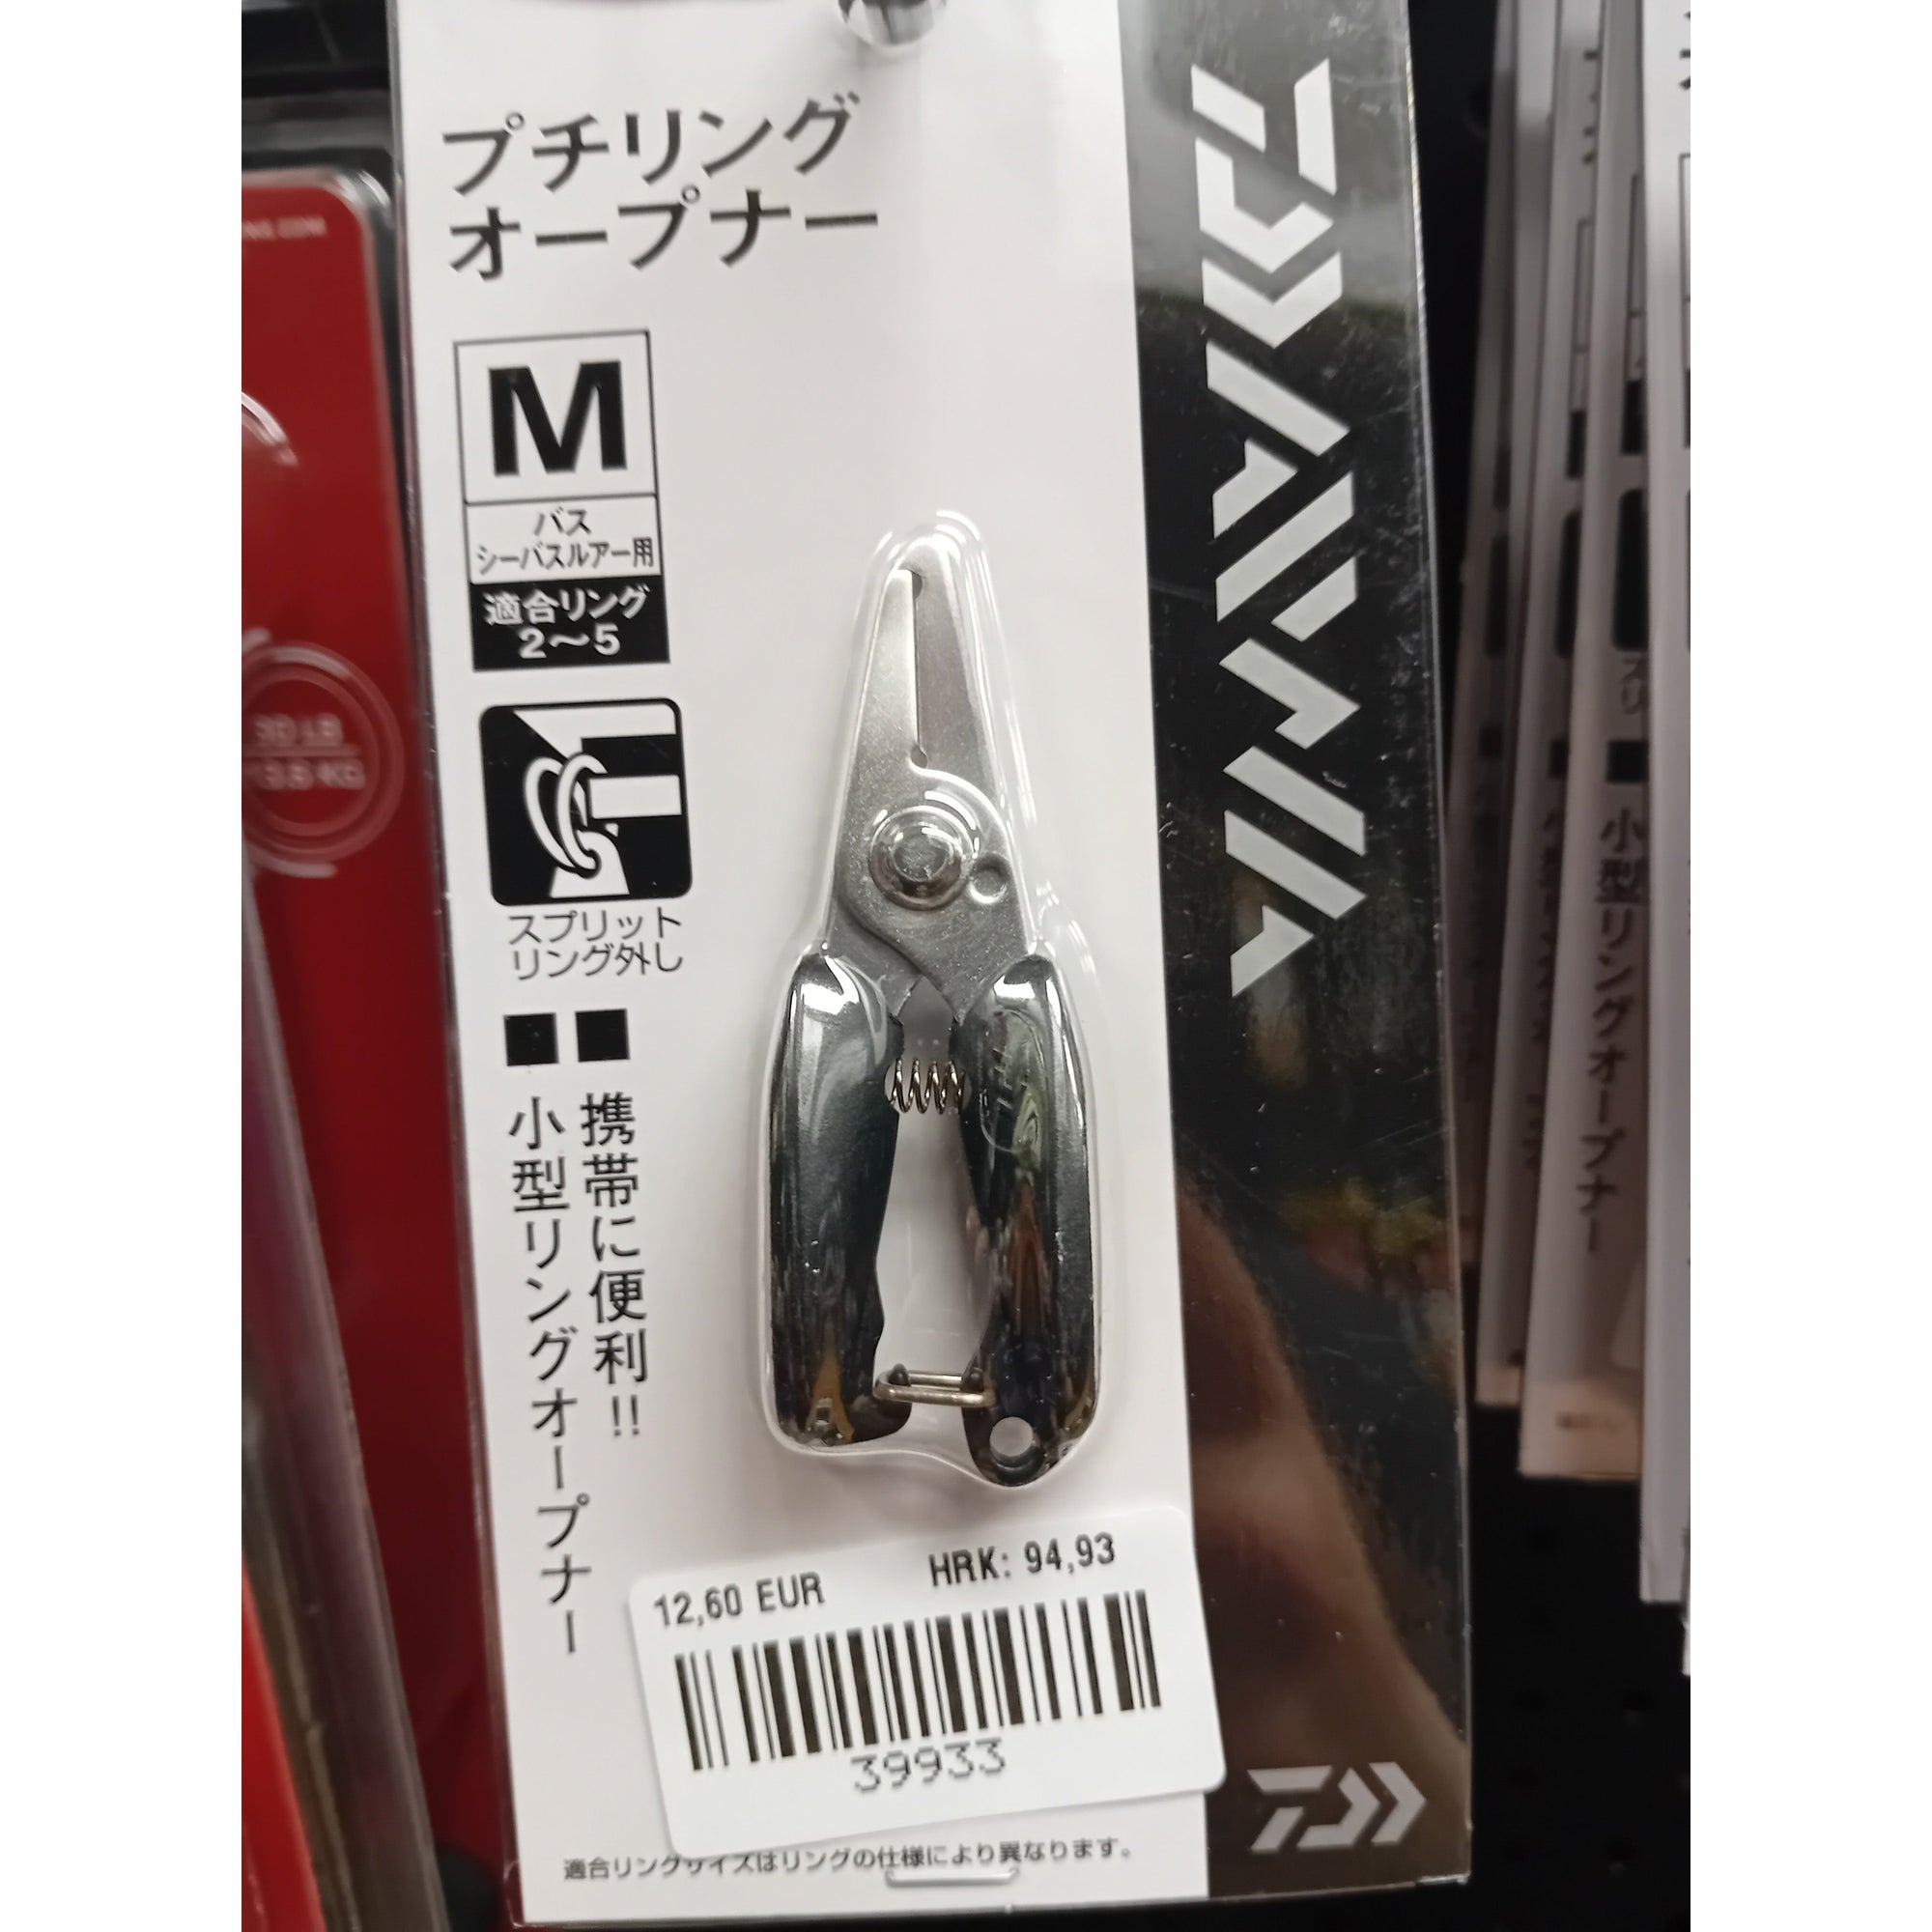 Daiwa new products